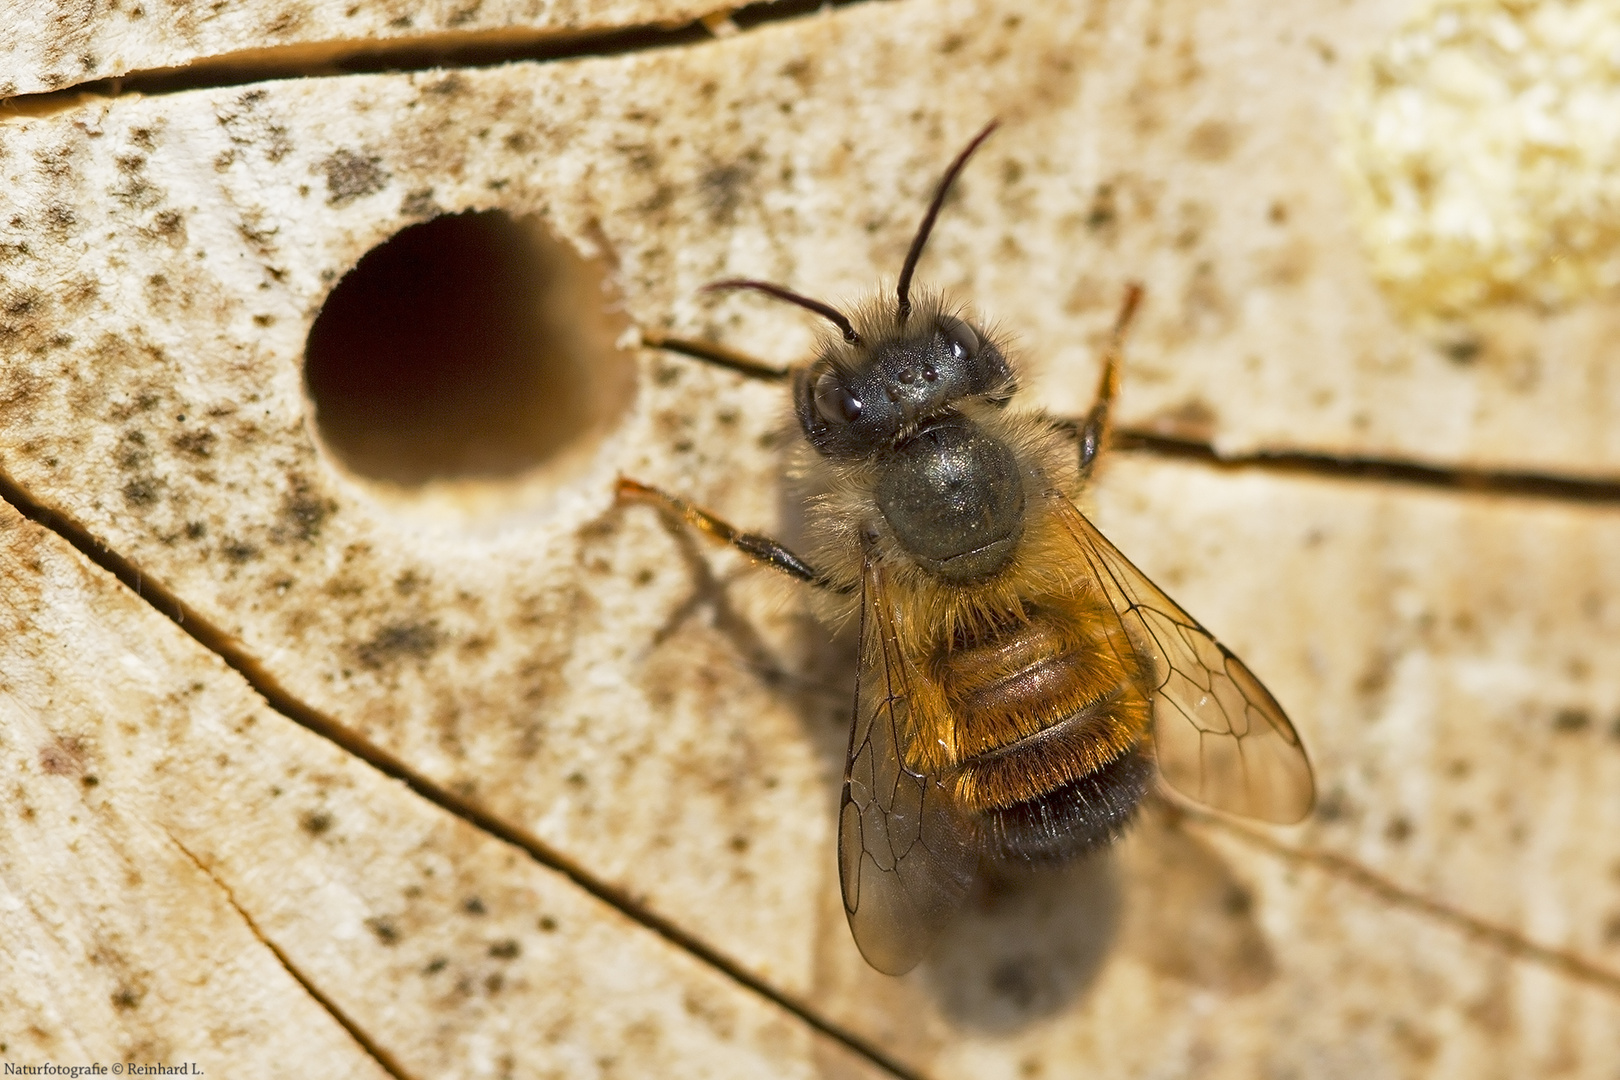  Die Rostrote Mauerbiene ist „Insekt des Jahres 2019“